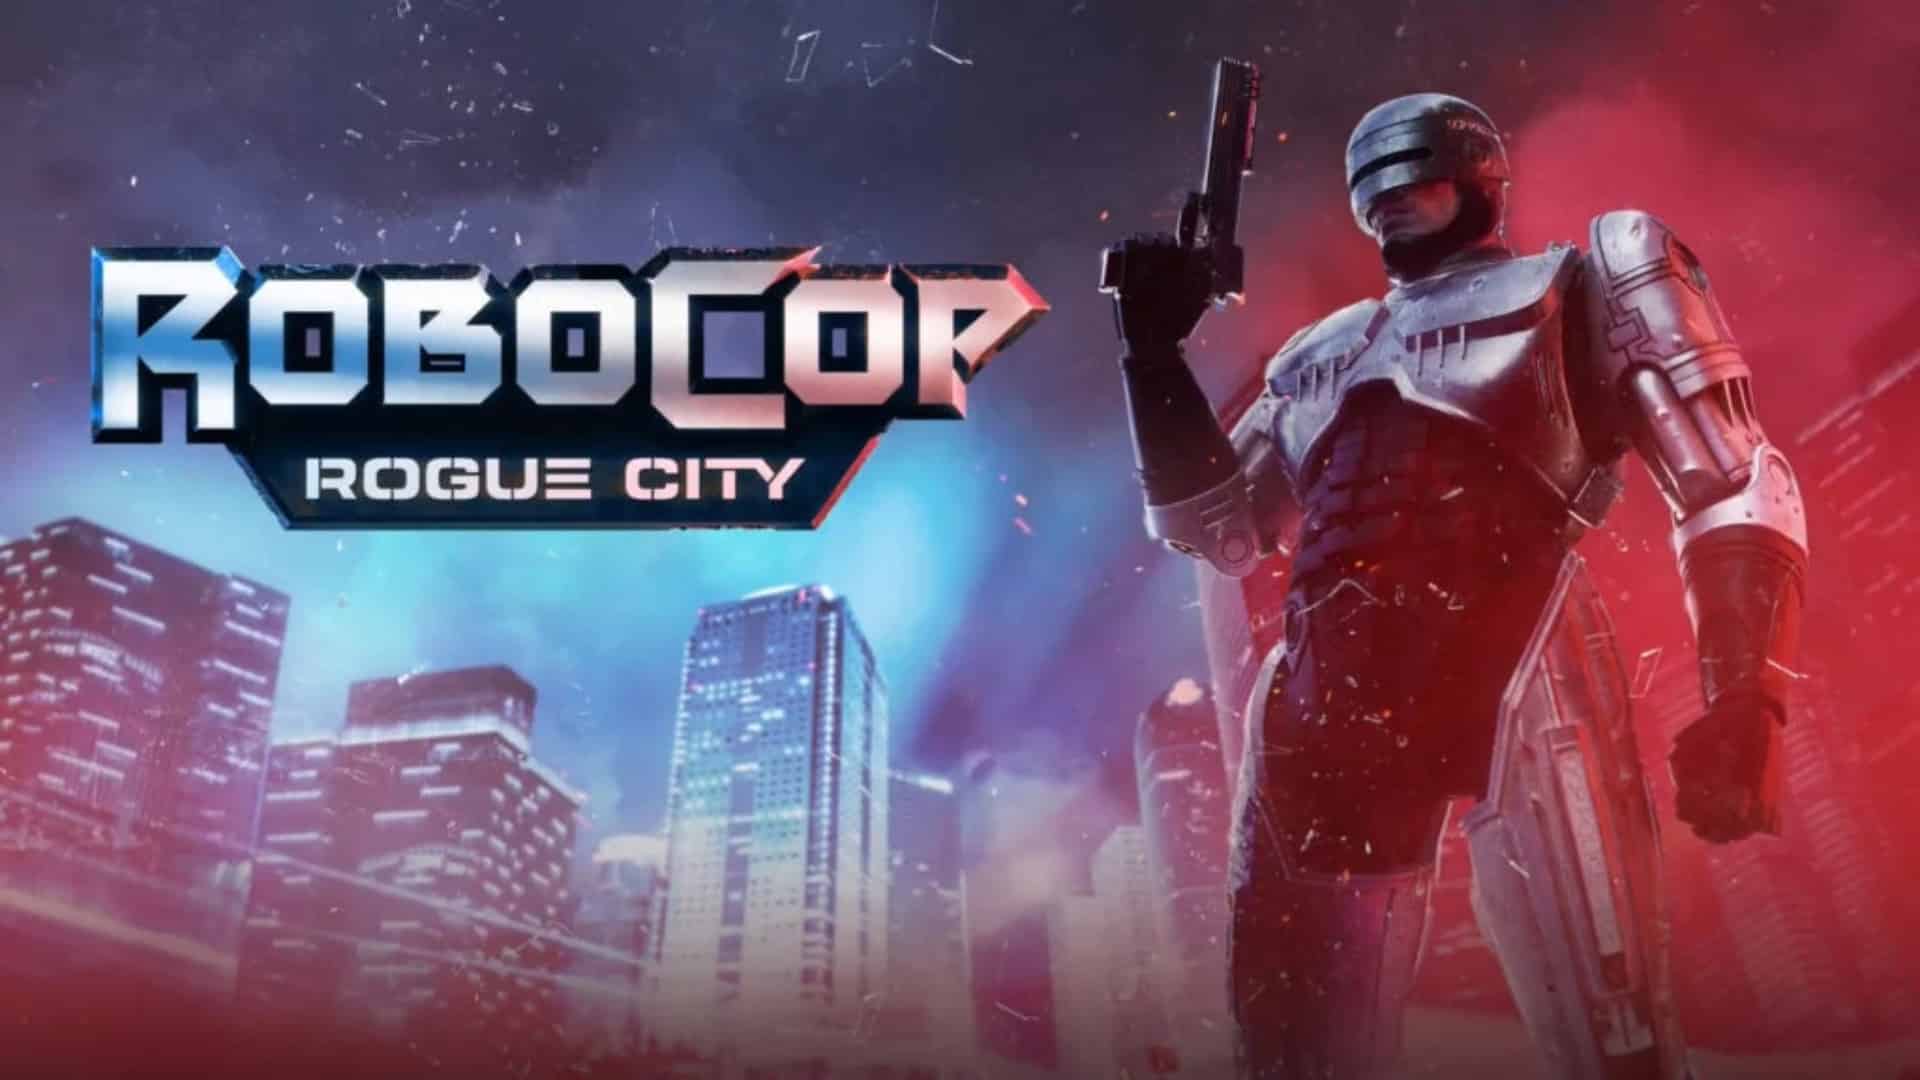 RoboCop: Rogue City for mac instal free